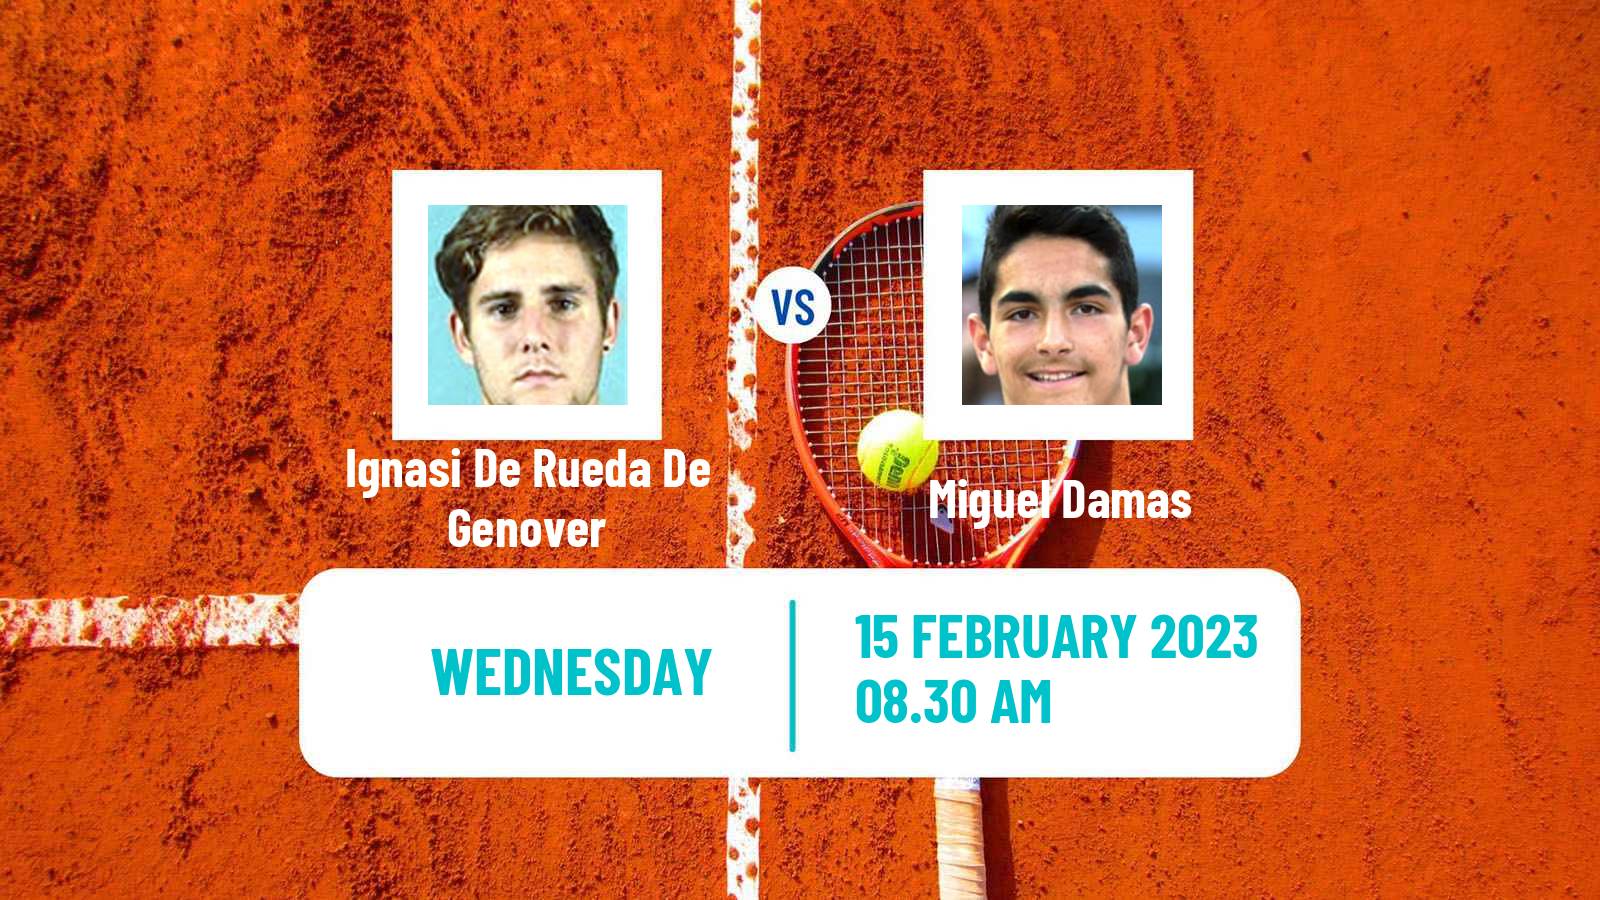 Tennis ITF Tournaments Ignasi De Rueda De Genover - Miguel Damas